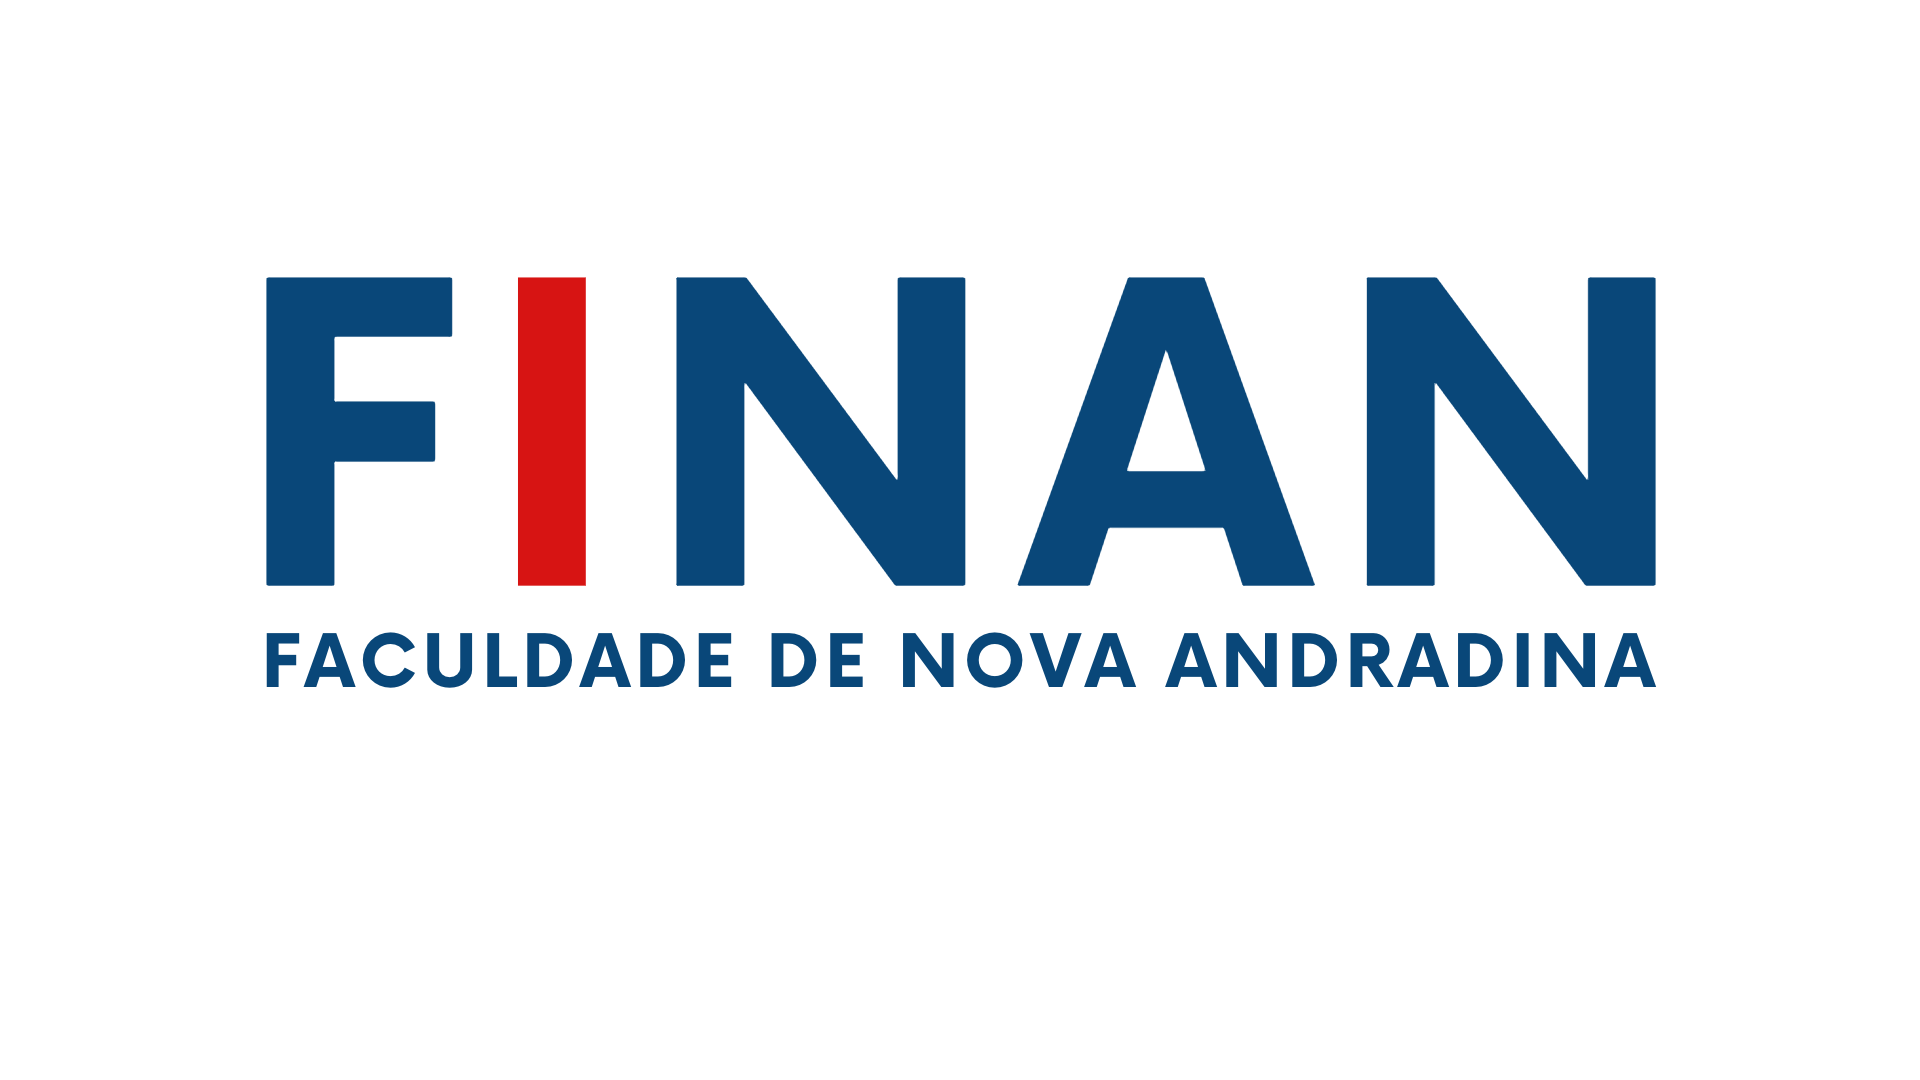 Finan - Faculdade de Nova Andradina